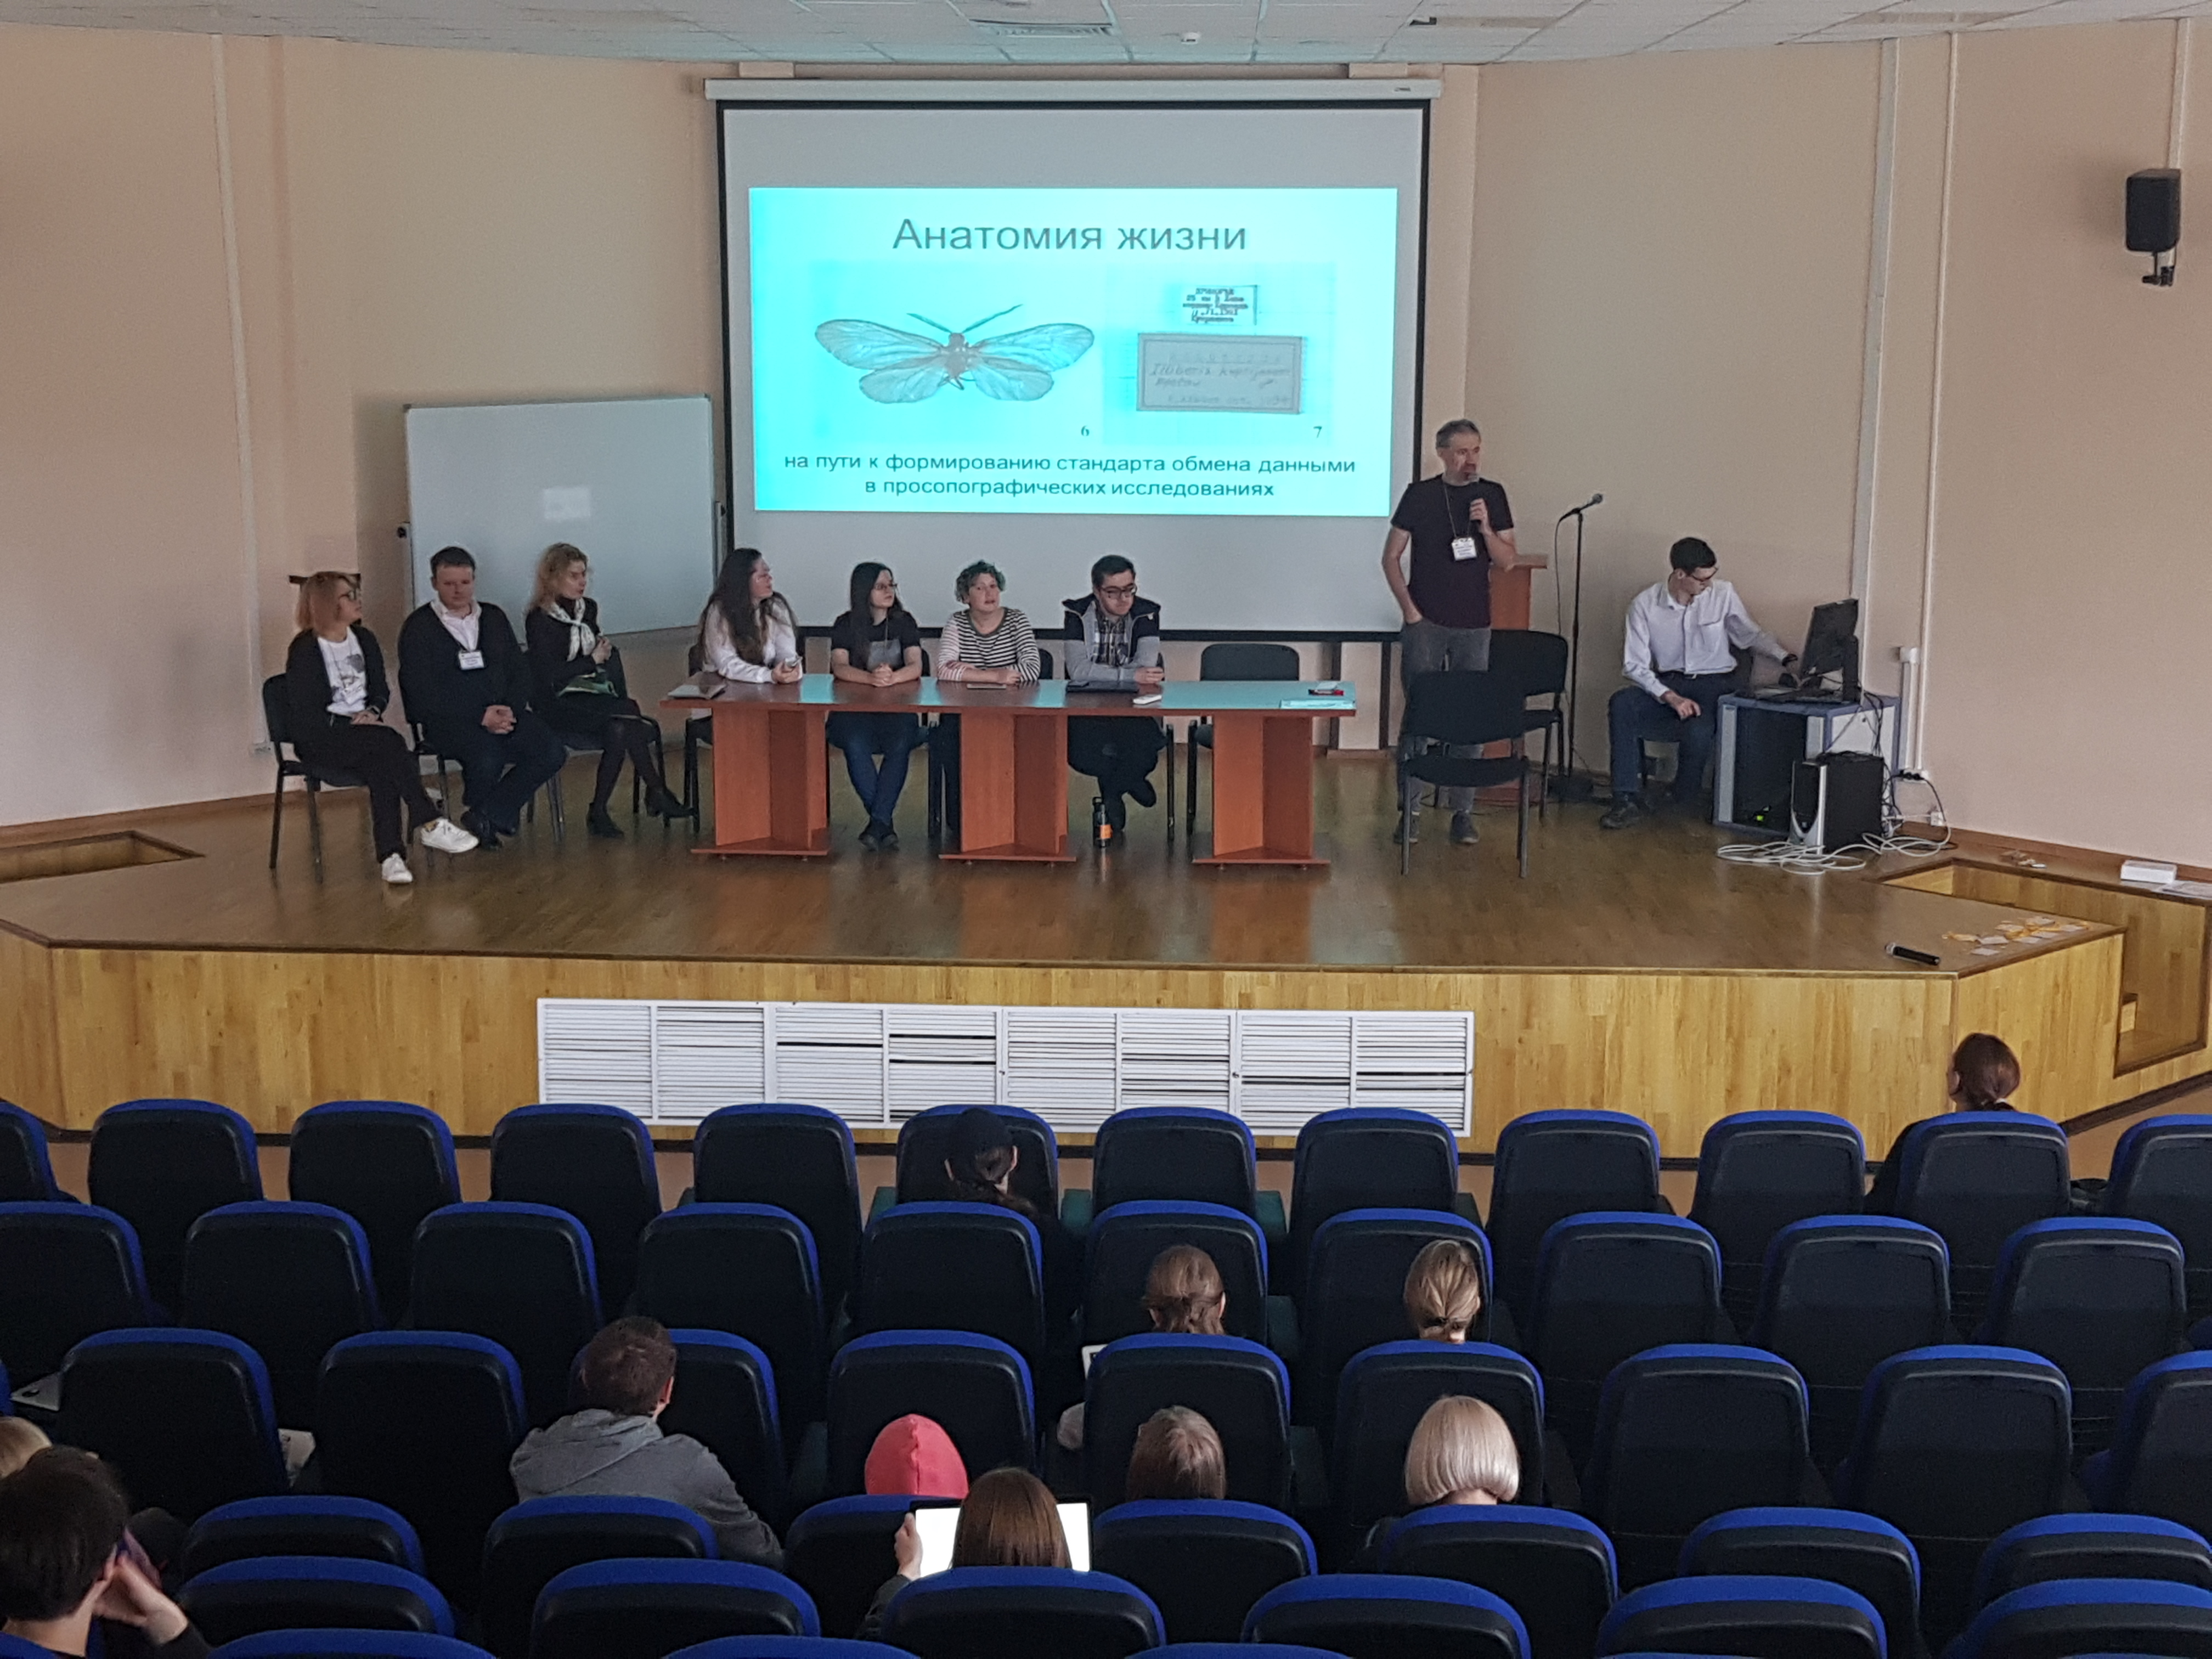 Итоговая презентация команды "Анатомия жизни" на IV Московско-тартуской школе